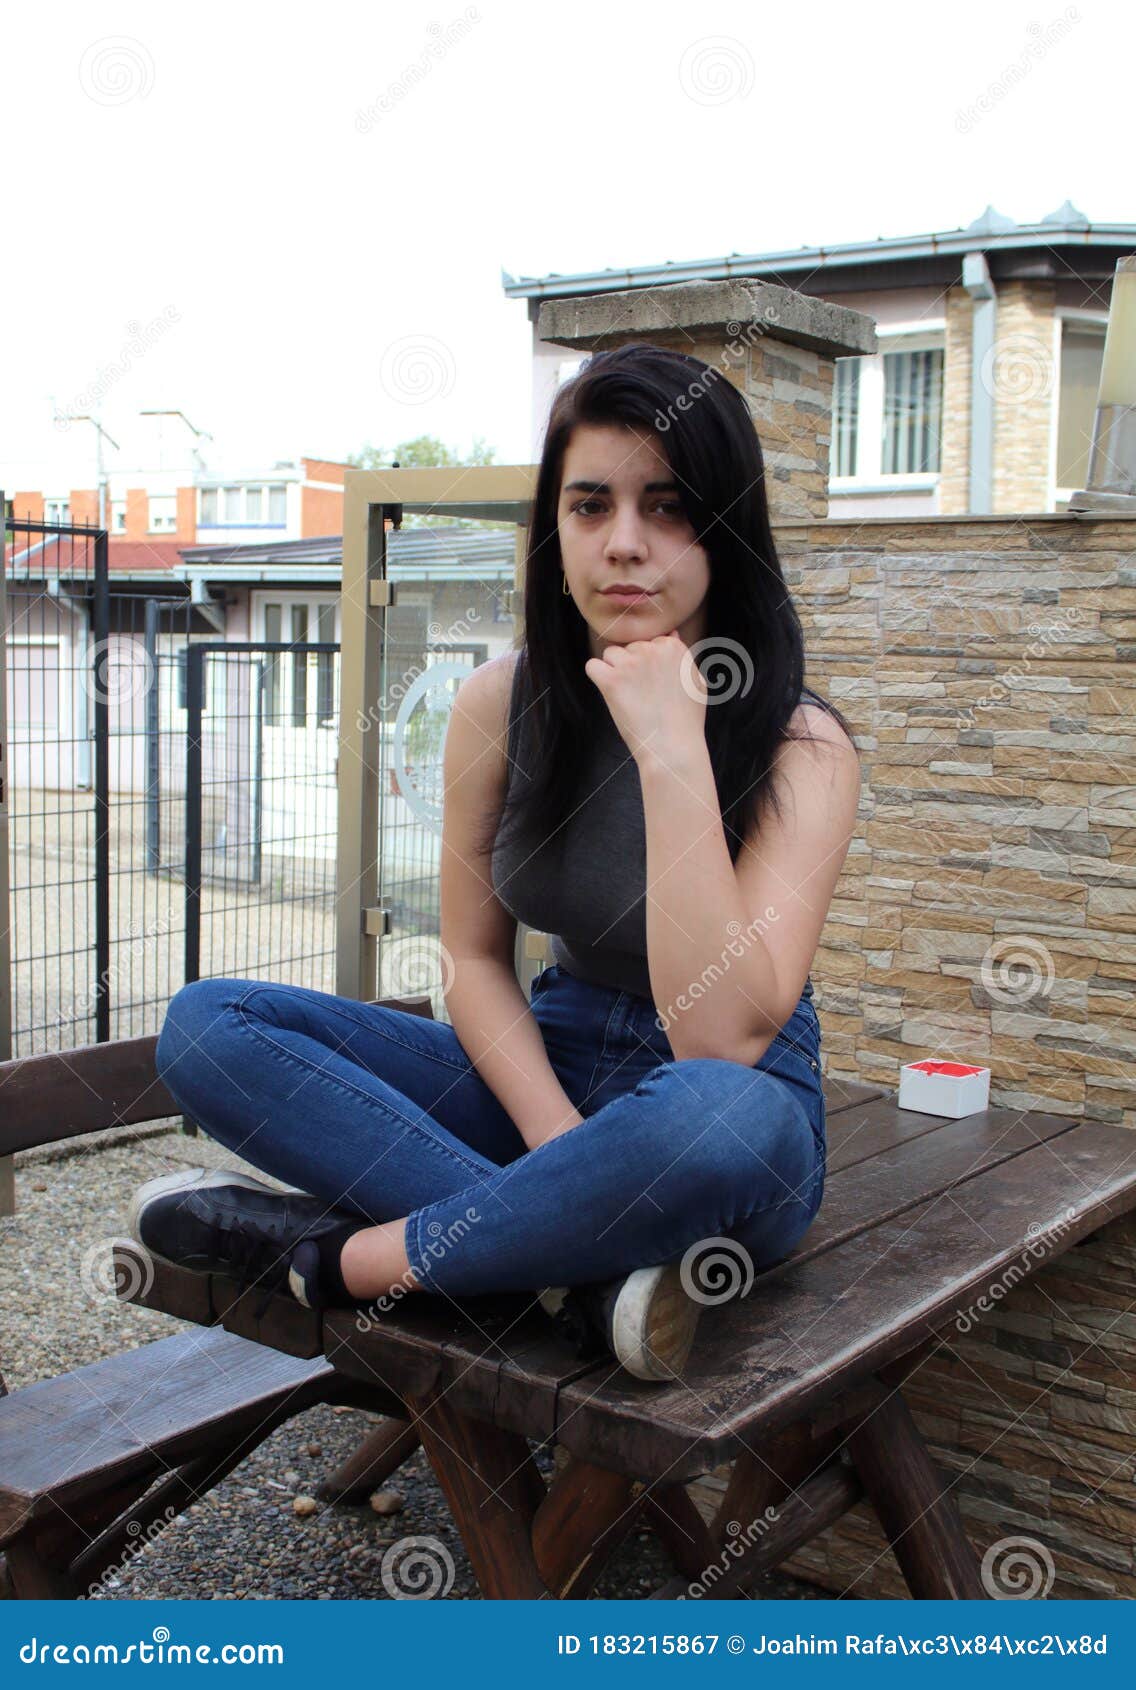 black haired teen girl